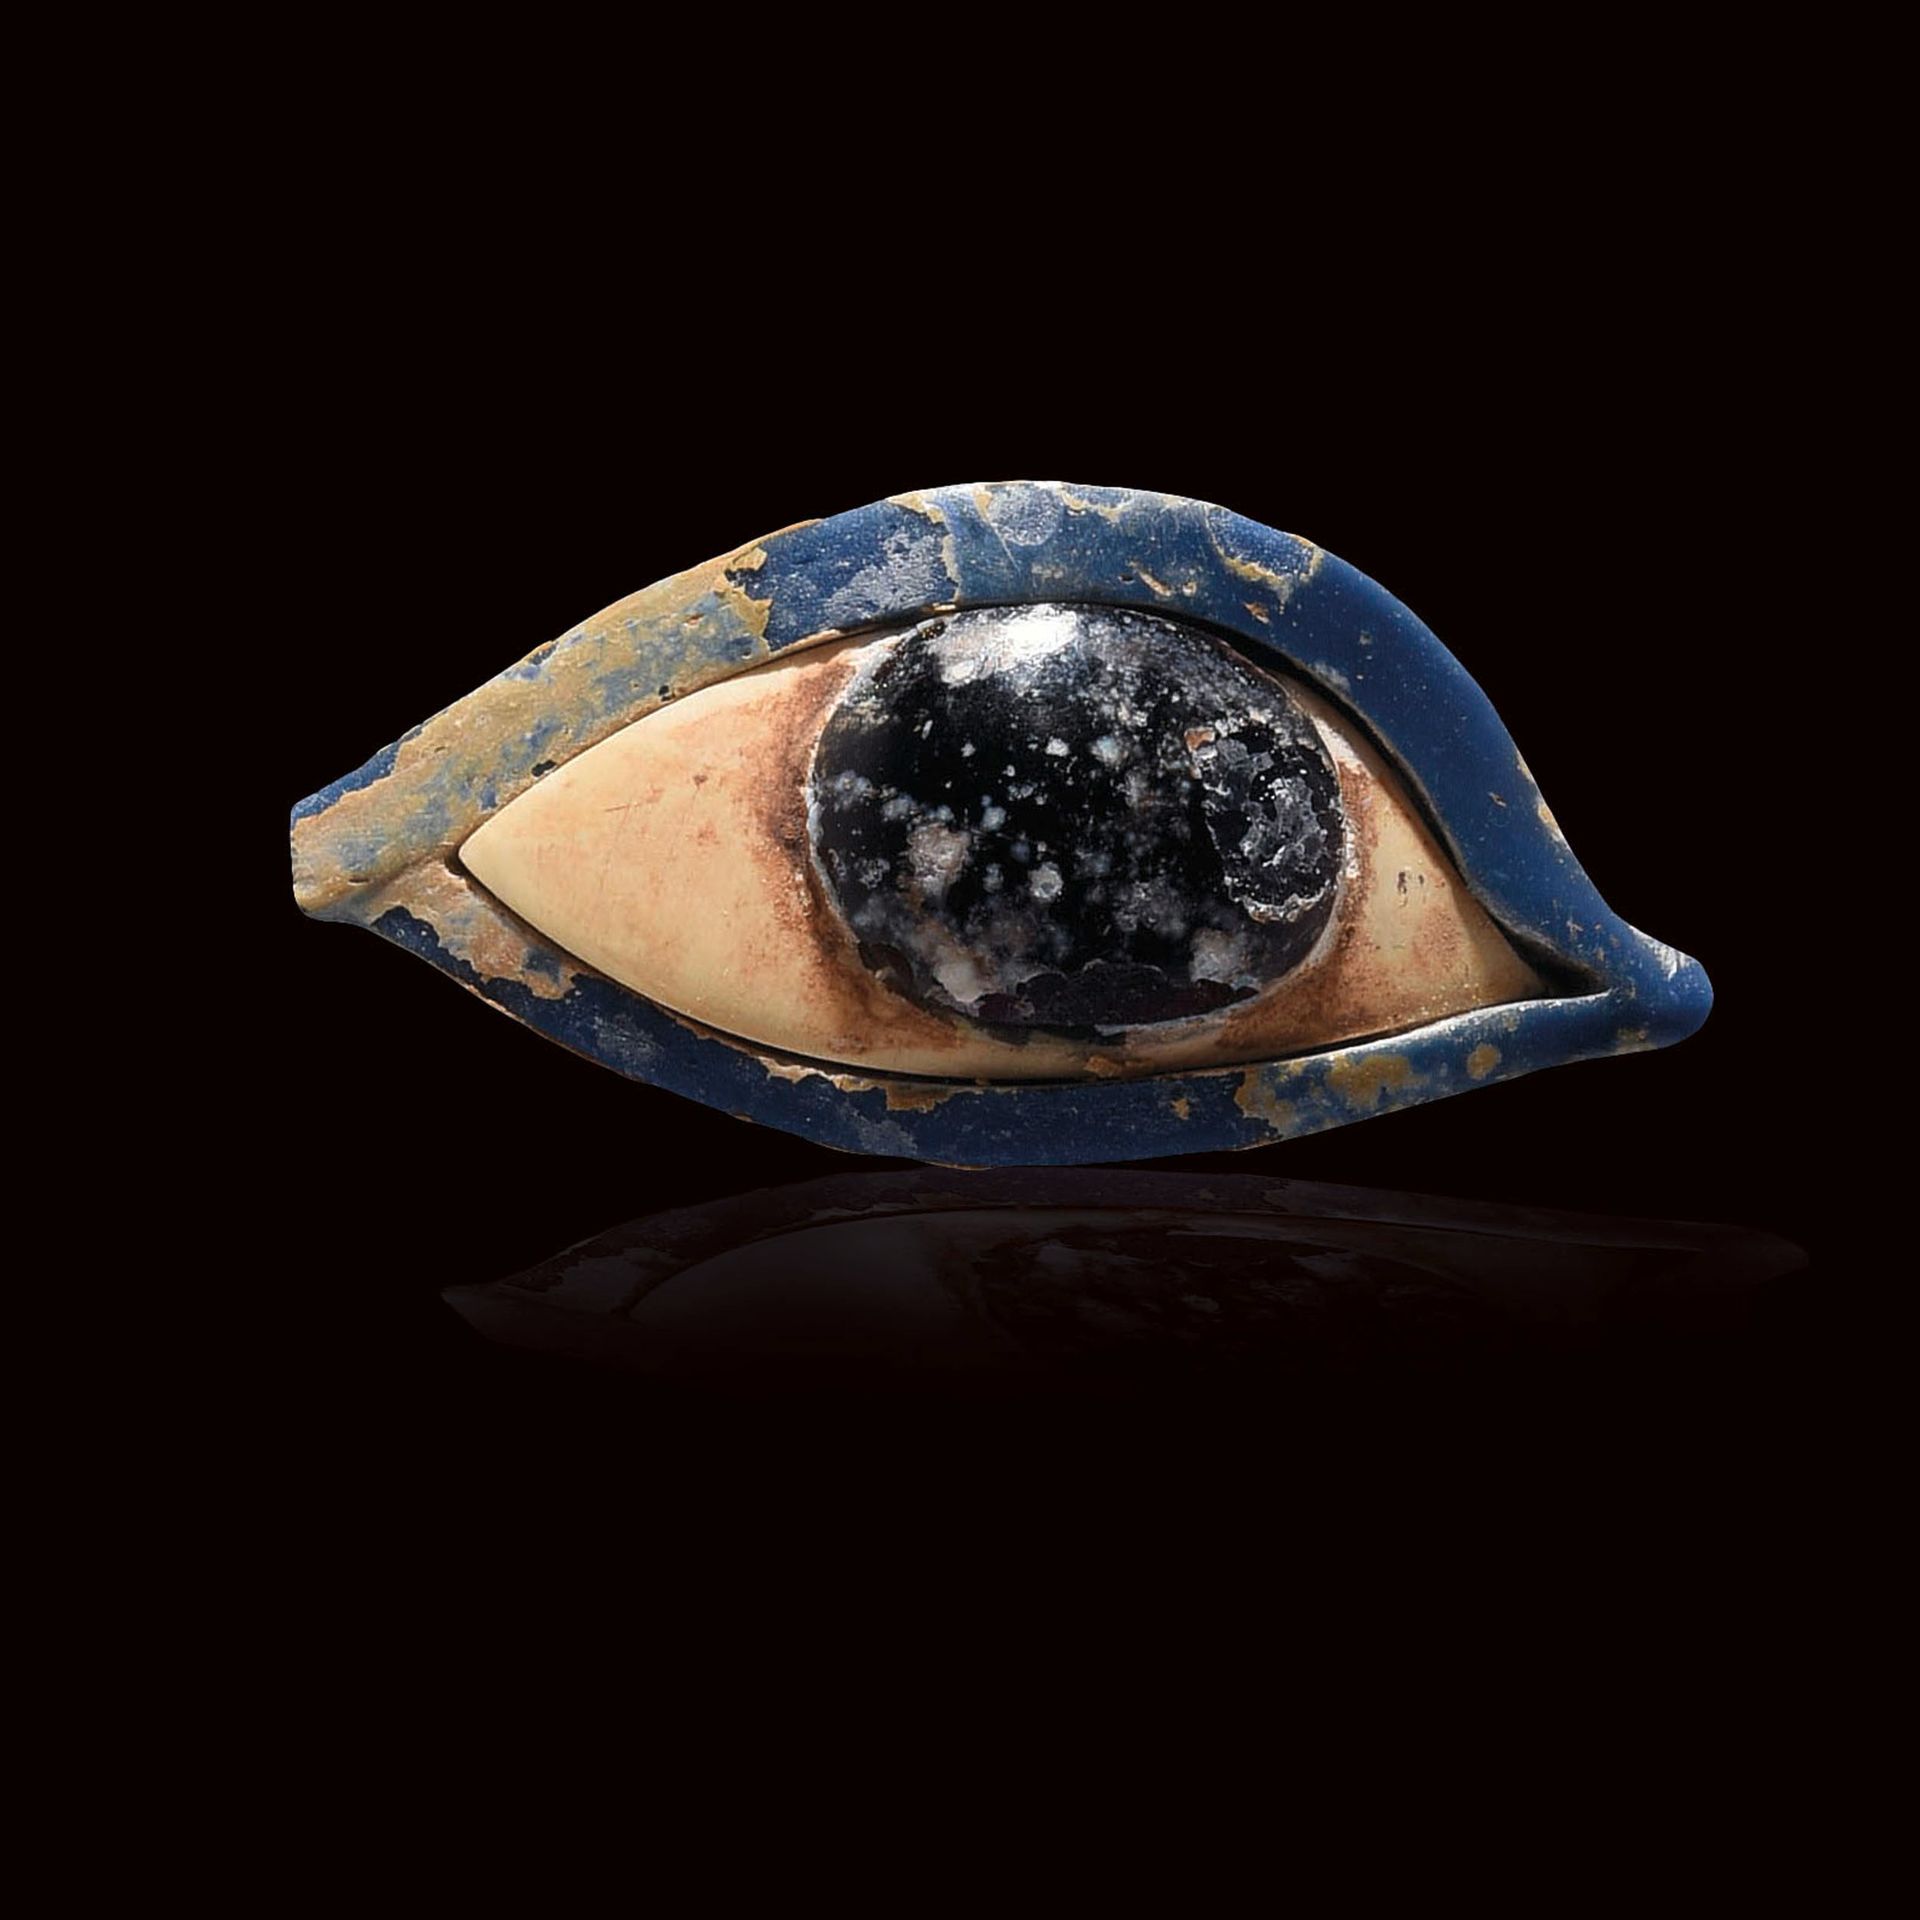 Null 殡葬面具的眼睛

埃及，新王国，第19-20王朝

蓝色玻璃的轮廓，白色玻璃的眼底和黑色玻璃的瞳孔。

保存得很好。尺寸：25 x 51 mm



&hellip;